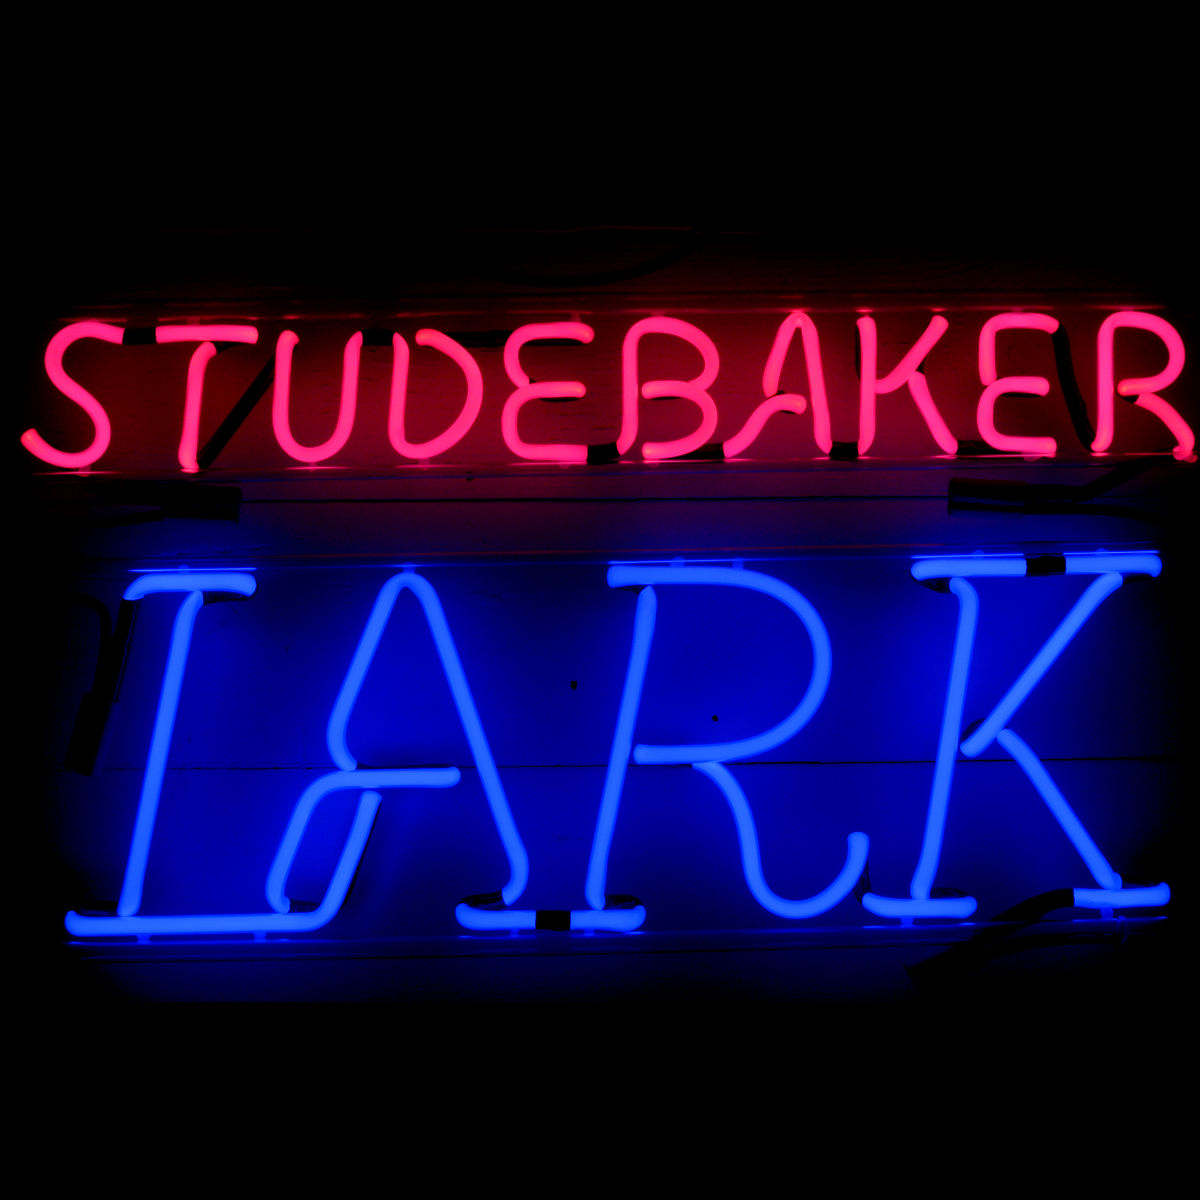 resized Studebaker Lark Neon Sign.jpg